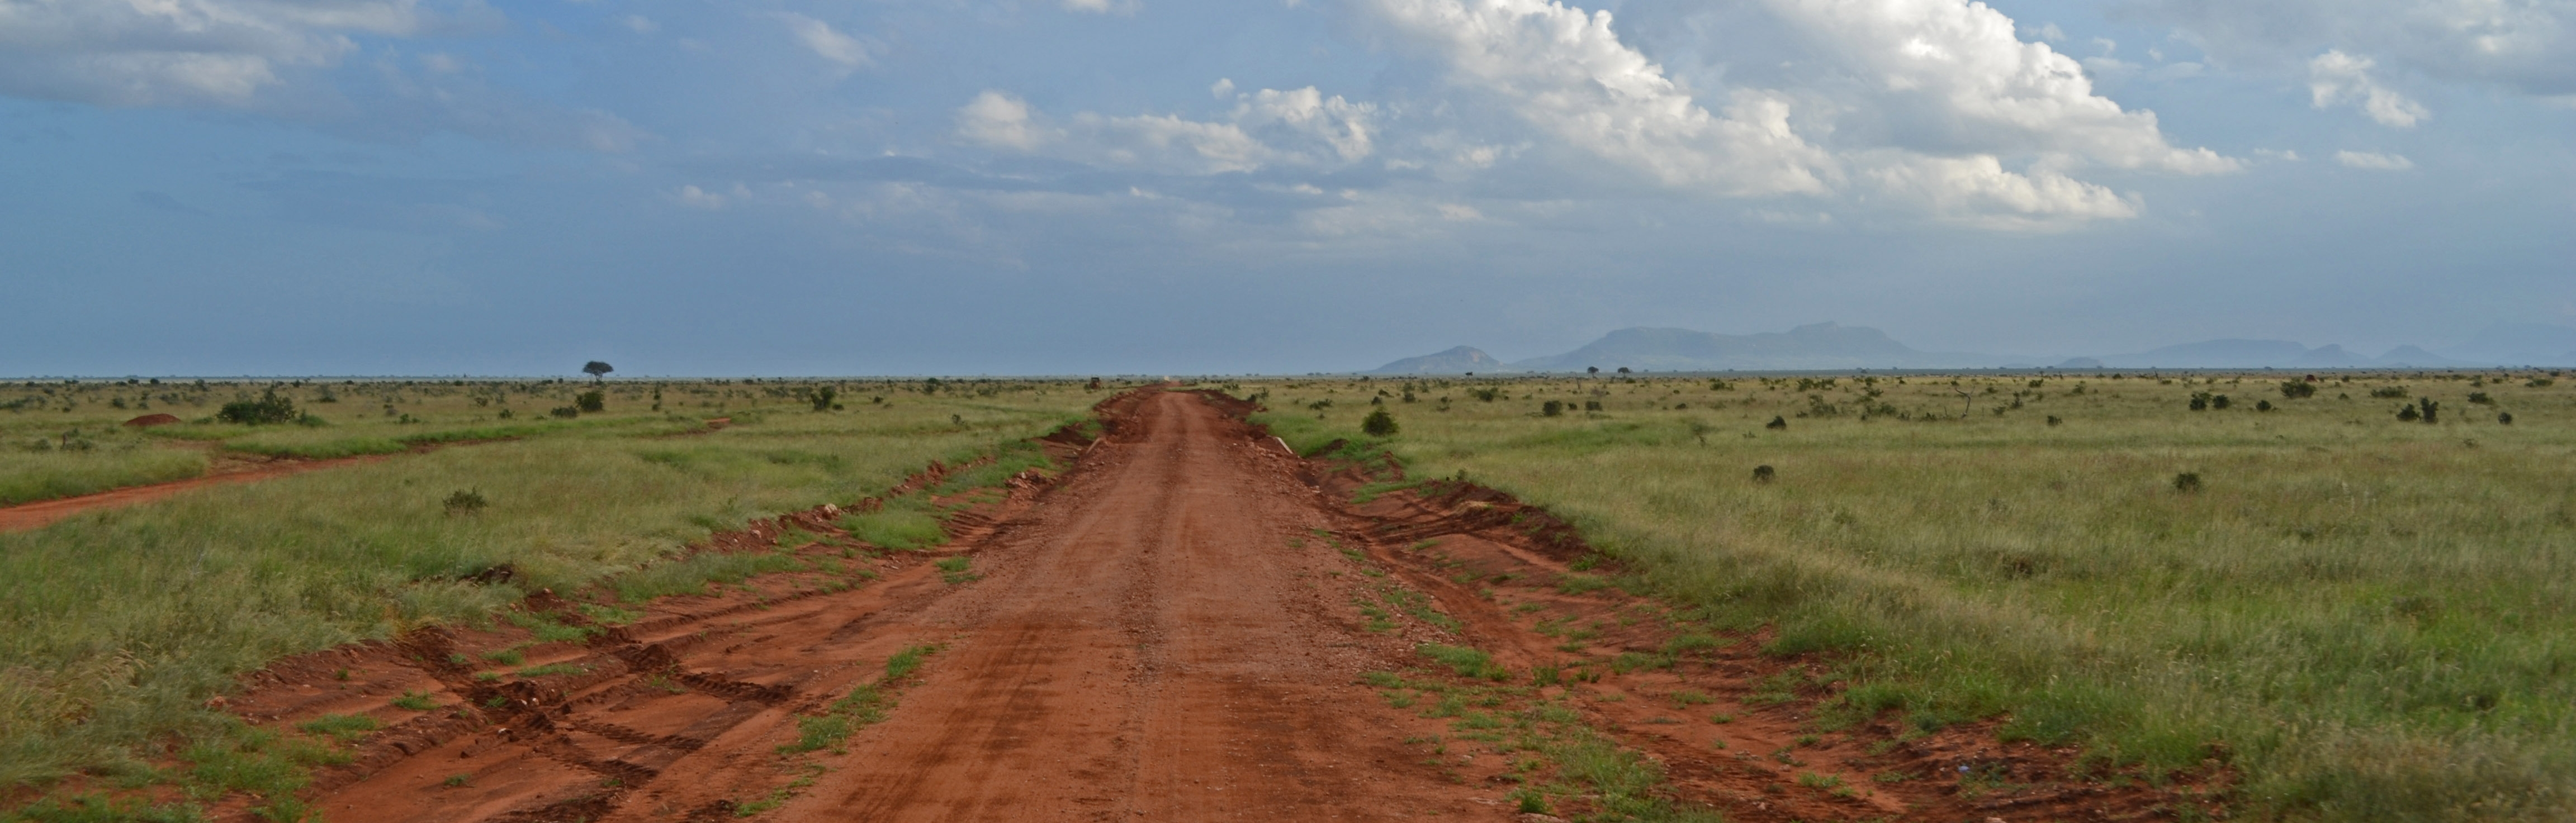 Red road, Tsavo East | Wikimedia